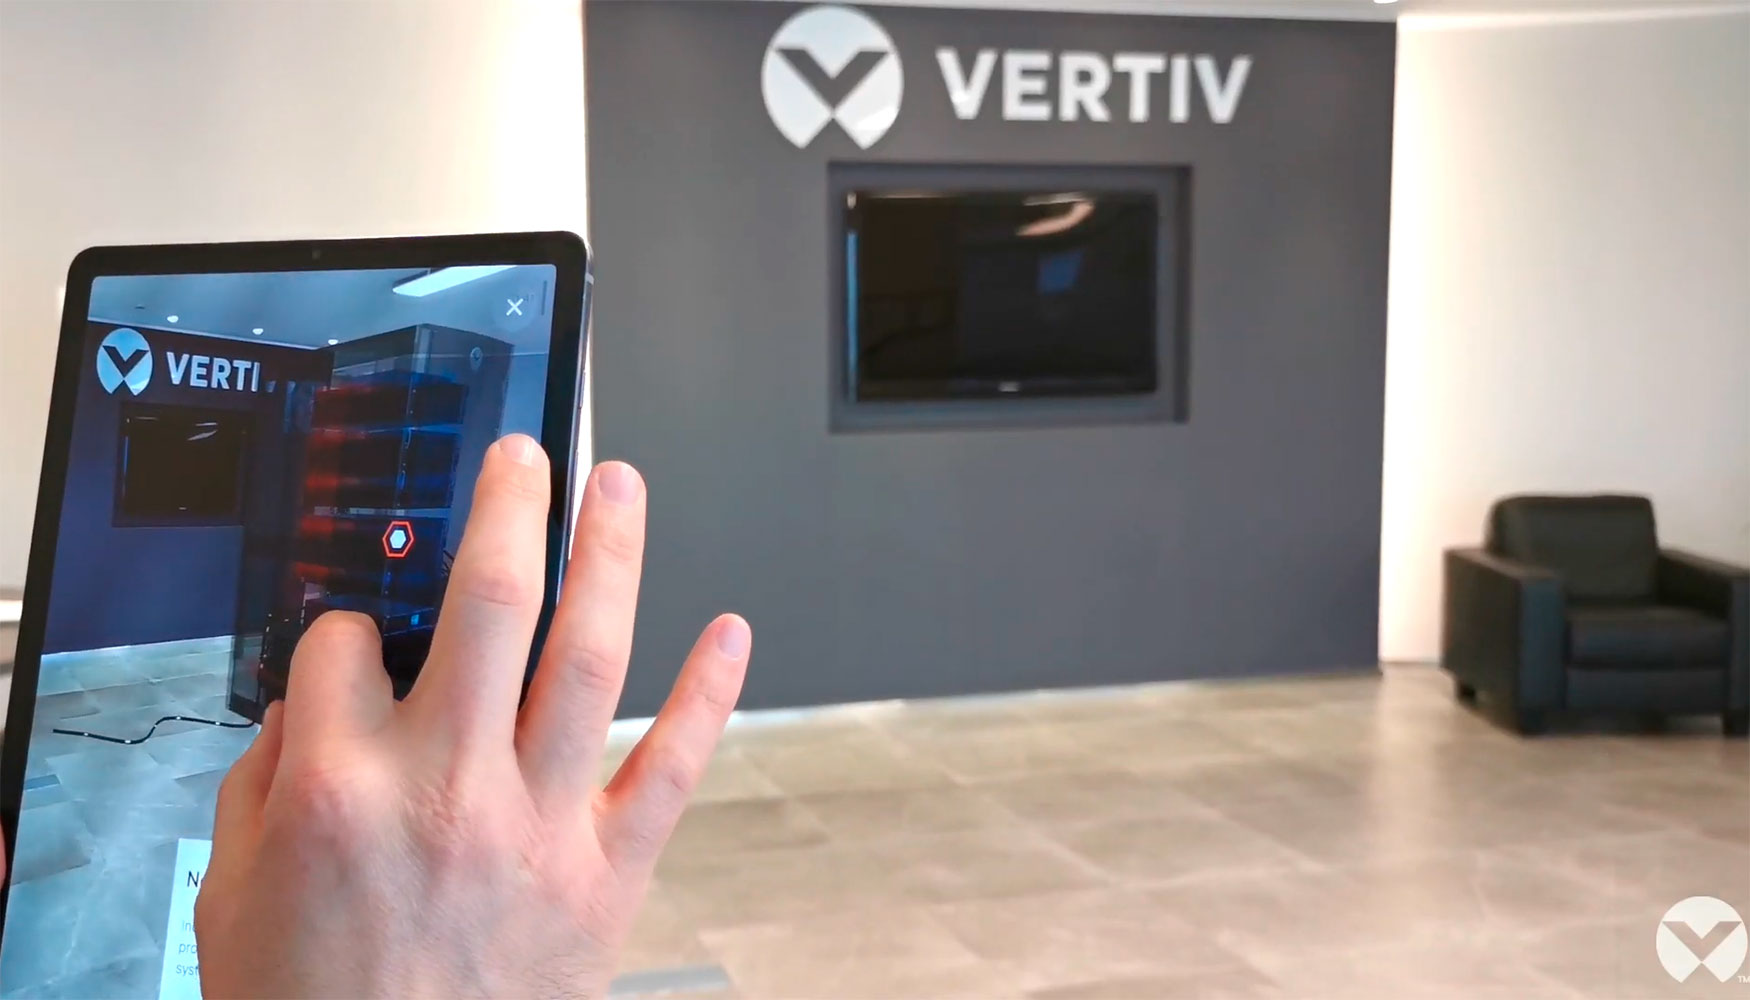 La app Vertiv XR permite a los usuarios ver y explorar el equipo en la ubicacin deseada antes de comprarlo e instalarlo...